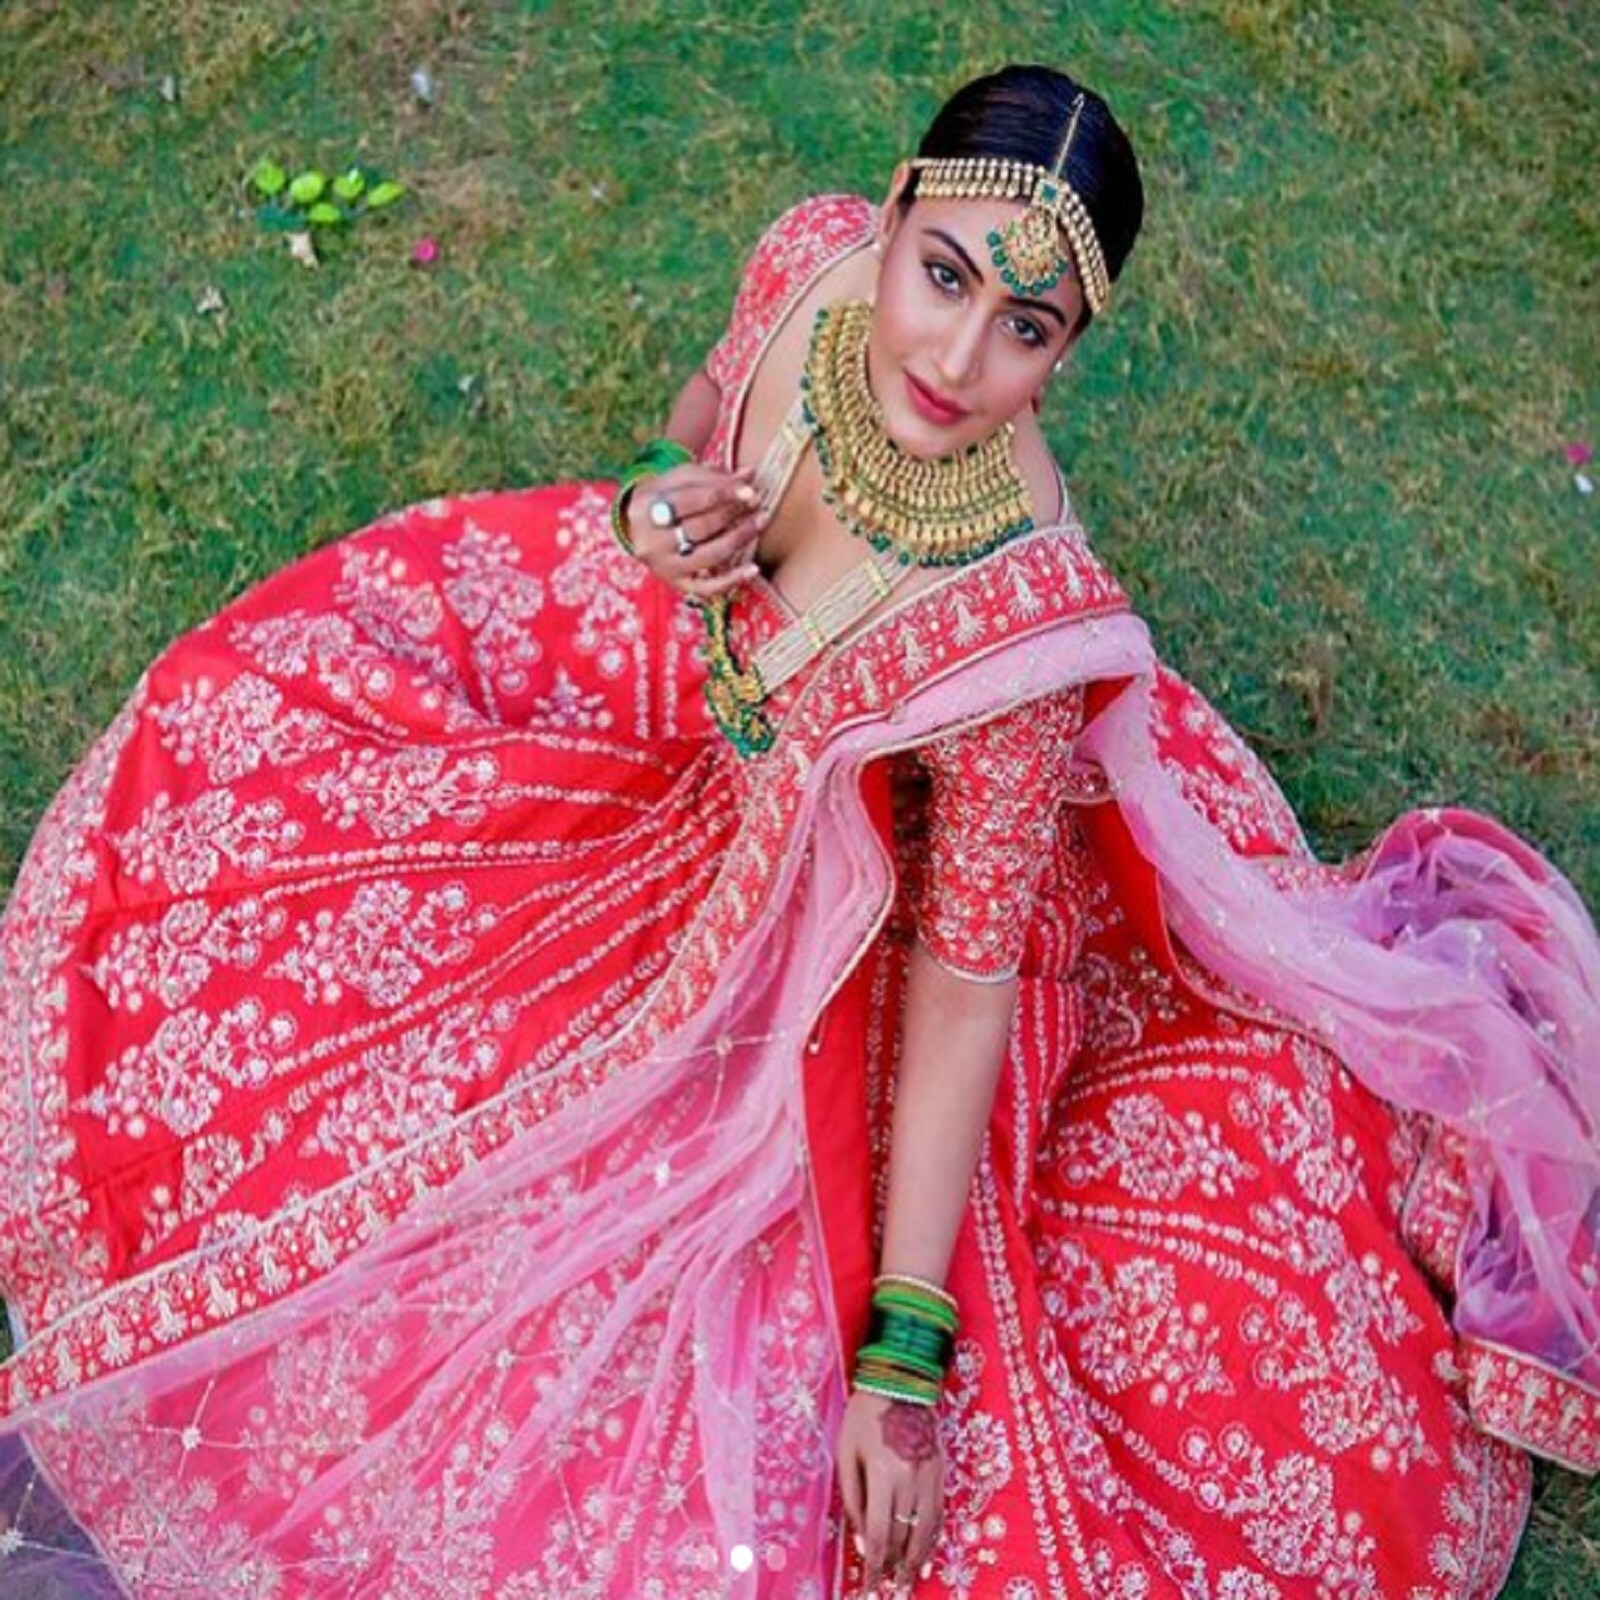 Karwa Chauth 2020 how to wear banarasi saree in fusion style follow these  simple tips - Karwa Chauth 2020 : करवा चौथ पर बनारसी साड़ी को स्टाइलिश  अंदाज में पहनें, परफेक्ट लुक